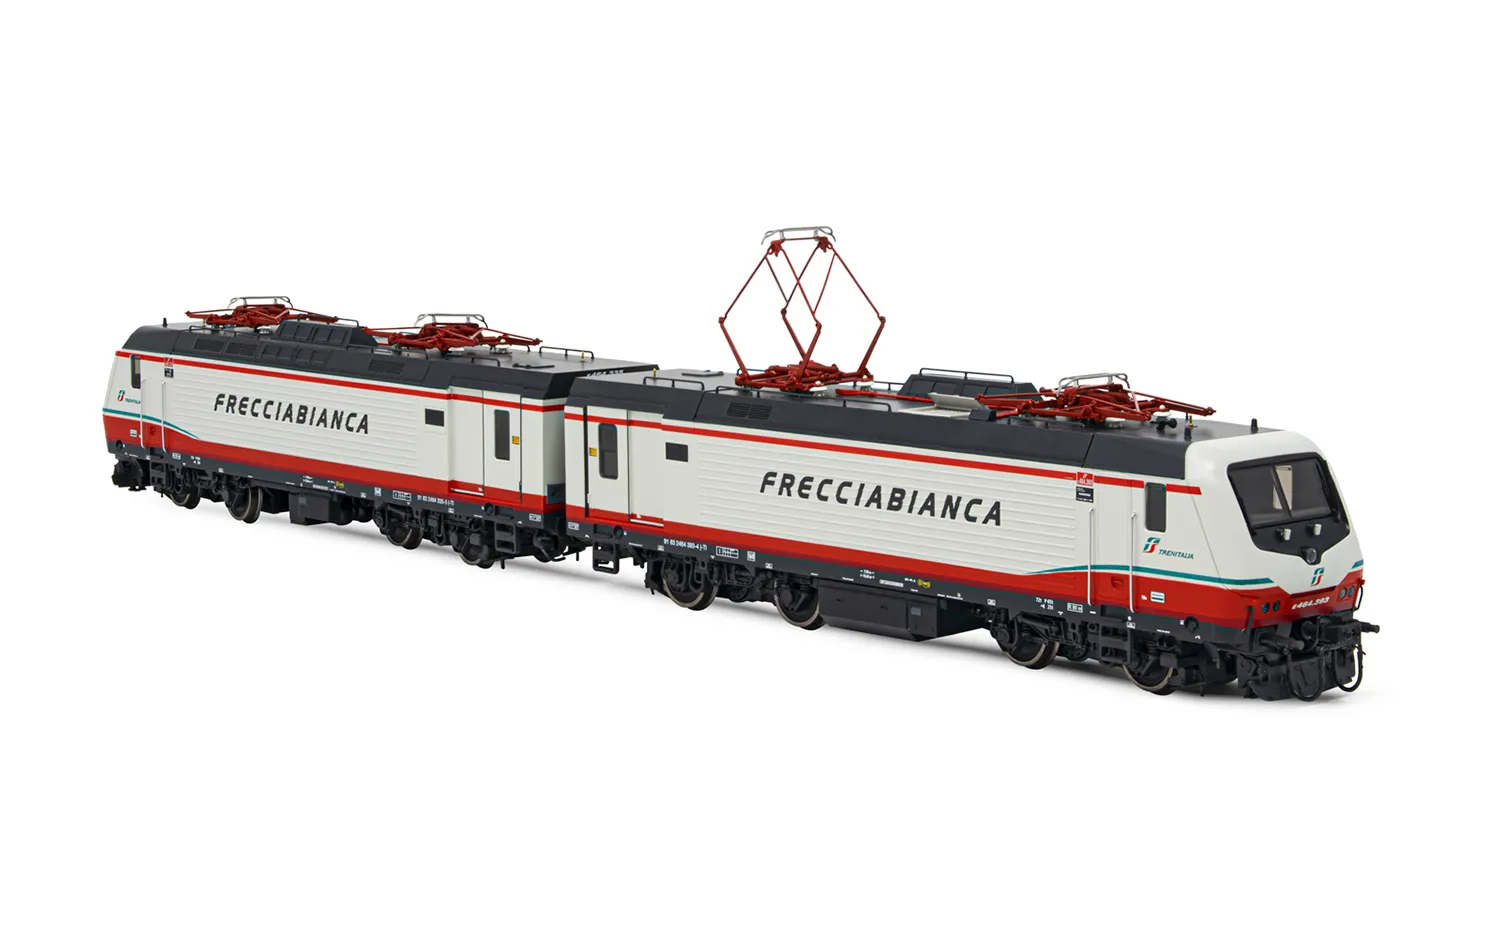 FS Trenitalia, set di 2 locomotive elettriche E.464 (entrambe motorizzate), livrea "Frecciabianca", ep. VI